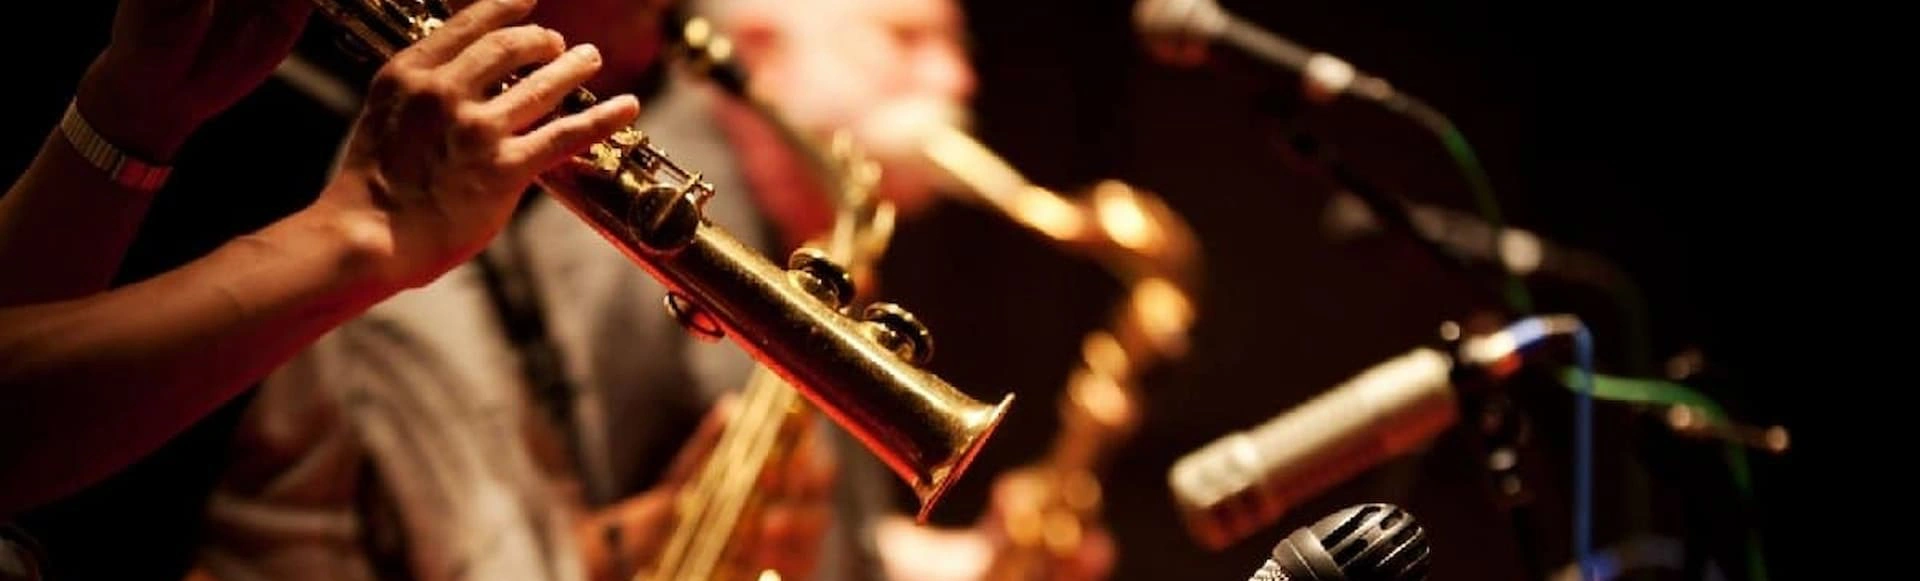 100-летие российского джаза отметят фестивалем в Сочи